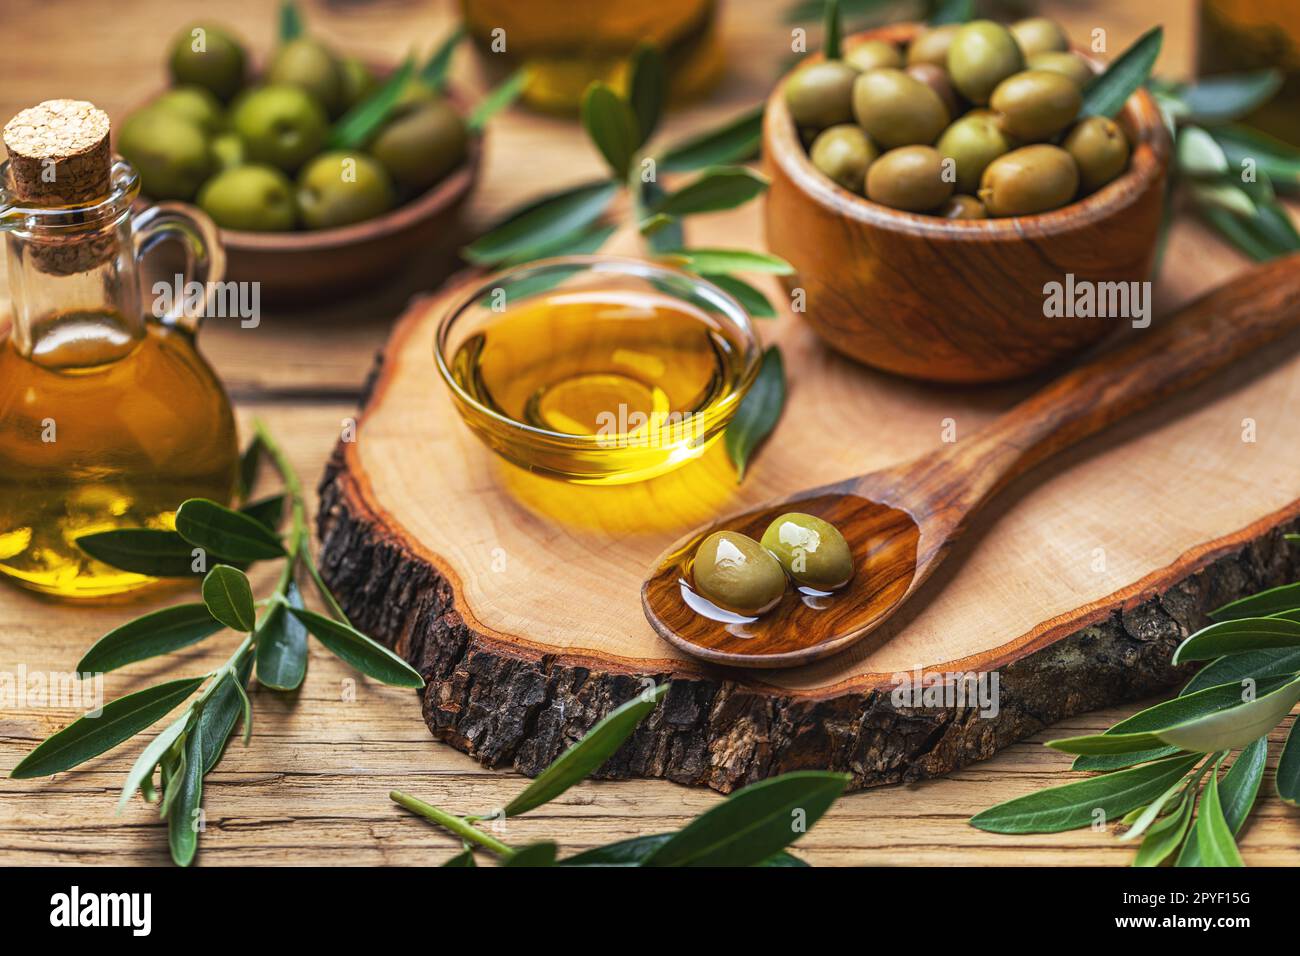 Huile d'olive bio dans un bol avec des olives vertes Banque D'Images